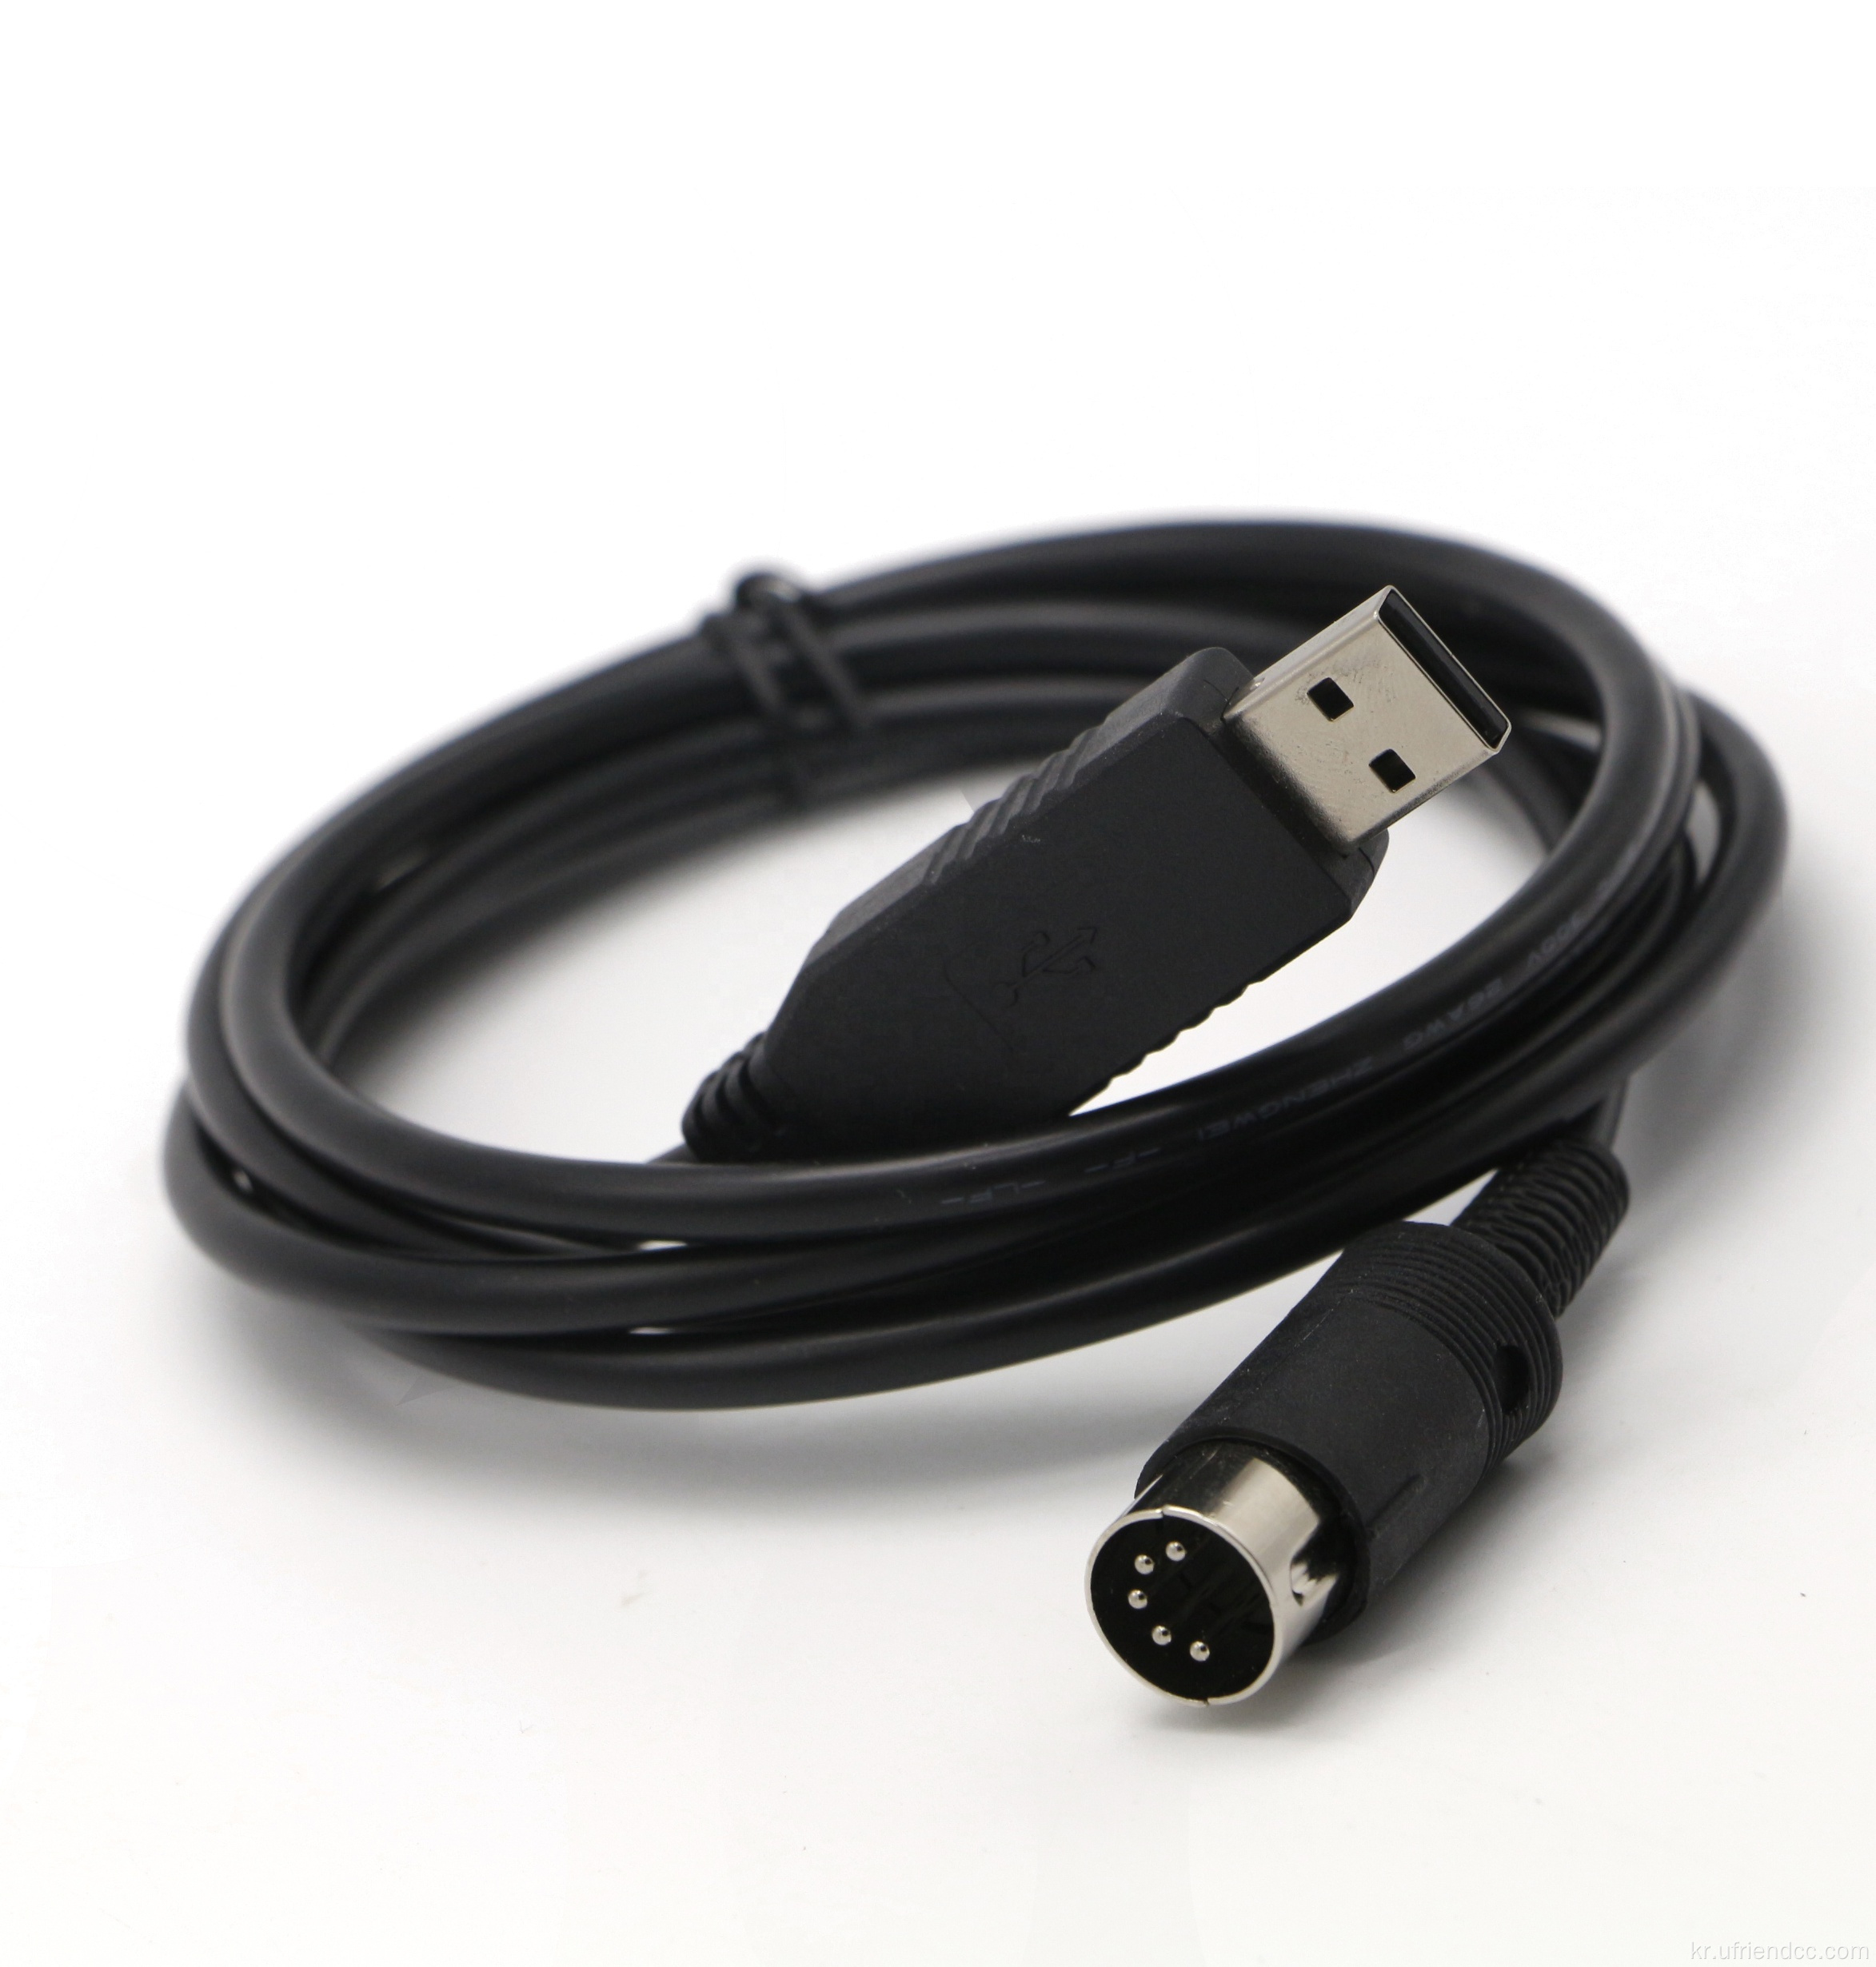 FTDI USB 2.0 ~ DIN 5Pin RS232 케이블